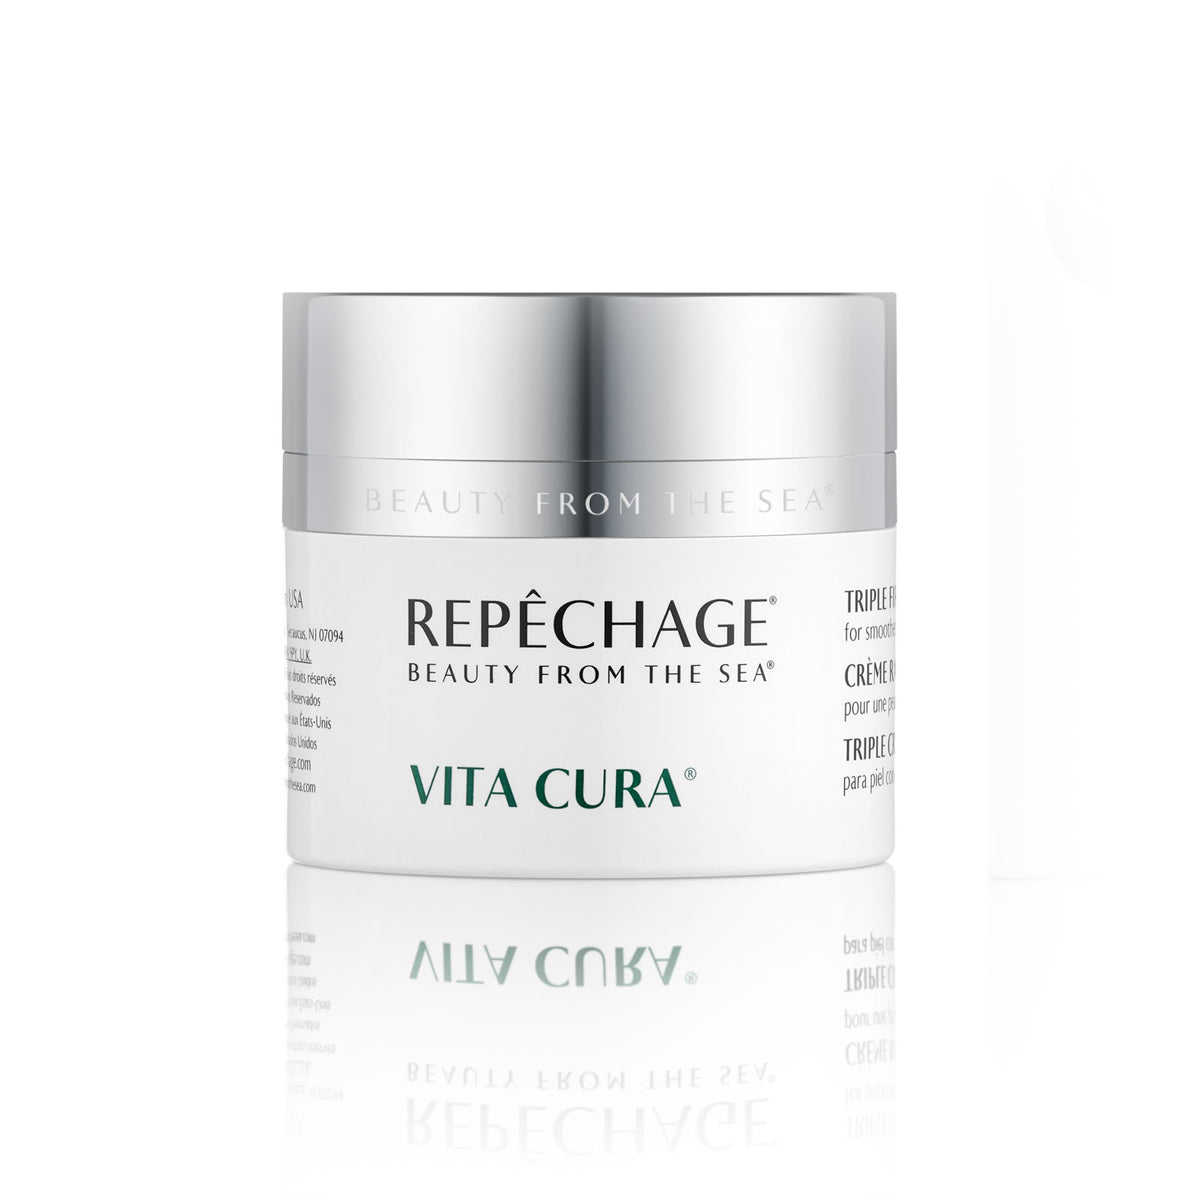 Vita Cura® Triple Firming Cream (1.7 oz)